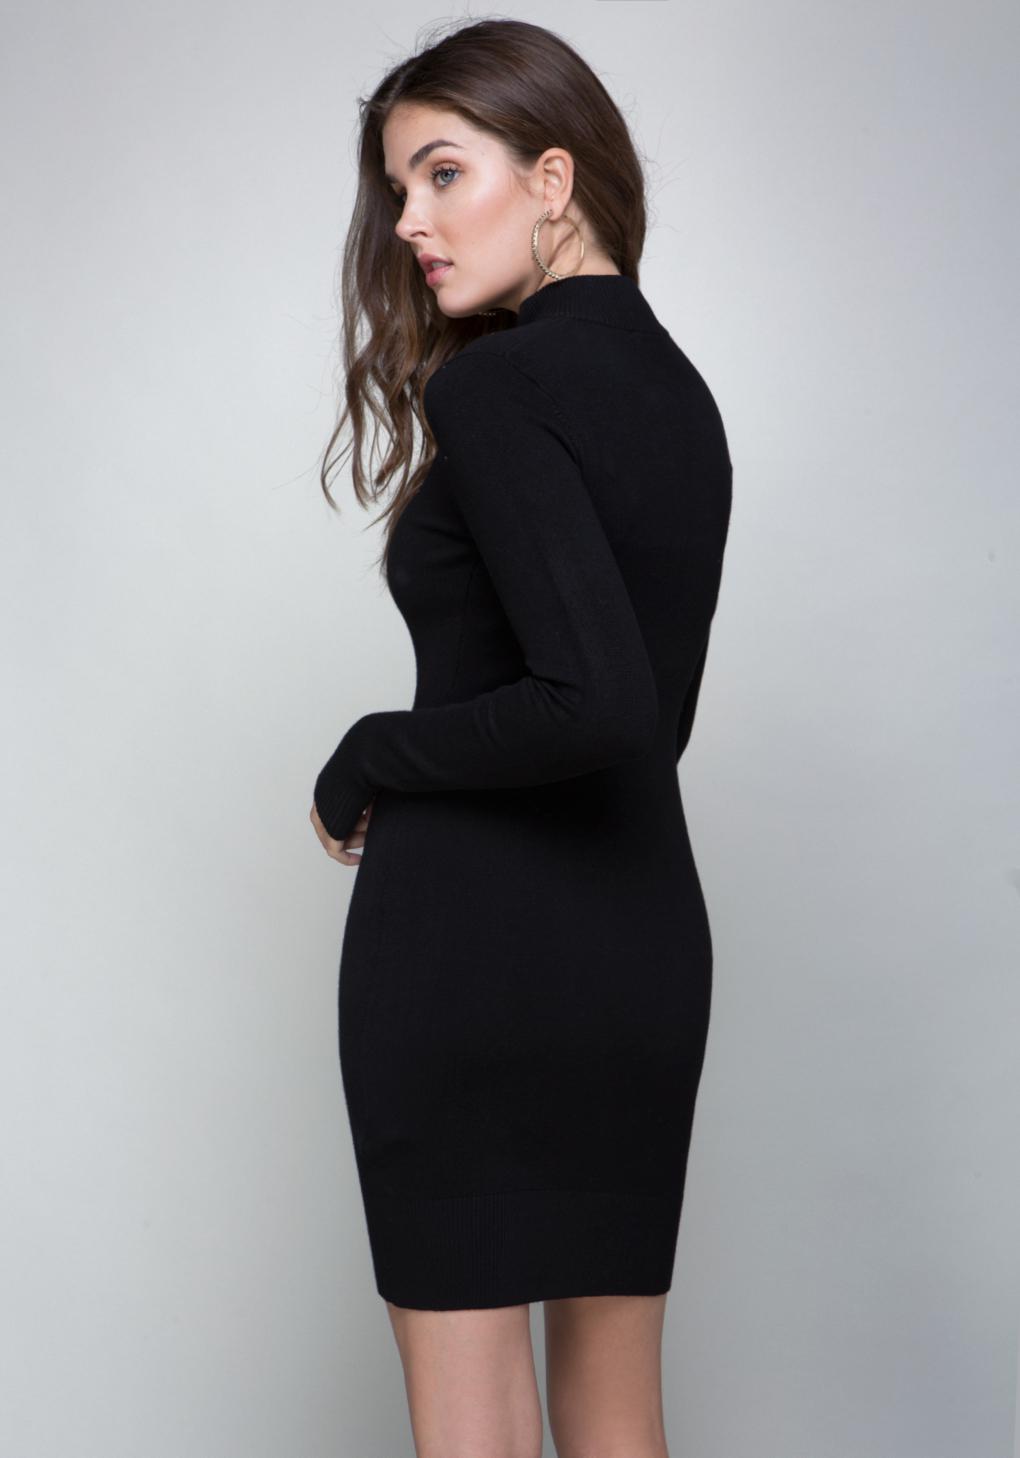 Bebe Mock Neck Sweater Dress in Black - Lyst